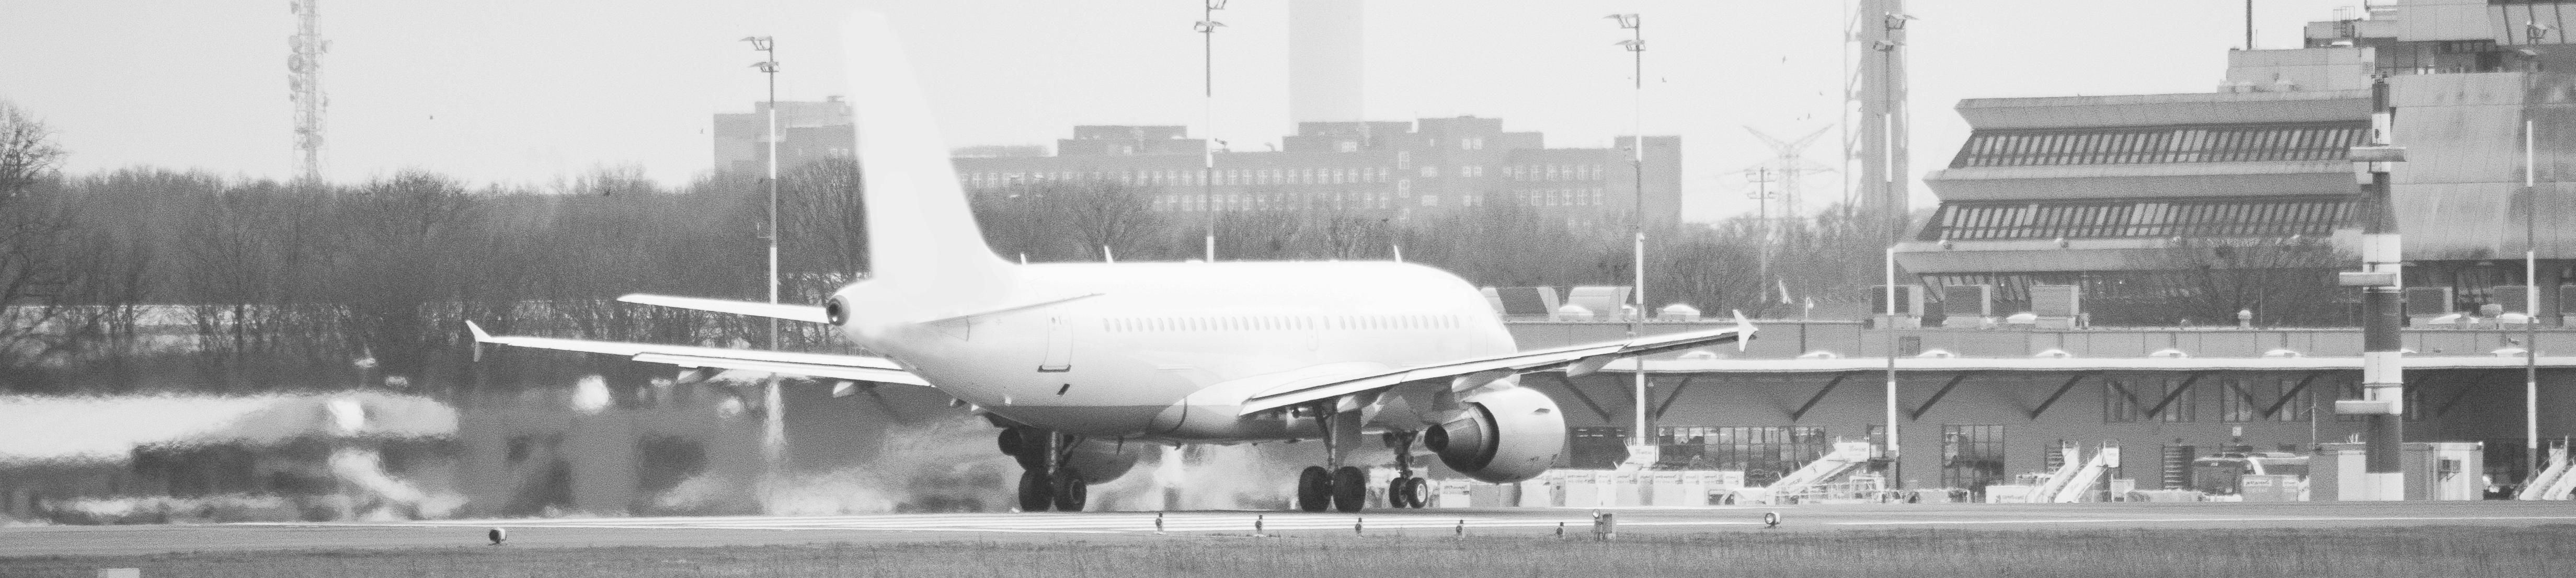 Einpackendes Flugzeug mit Flughafengebäude im Hintergrund